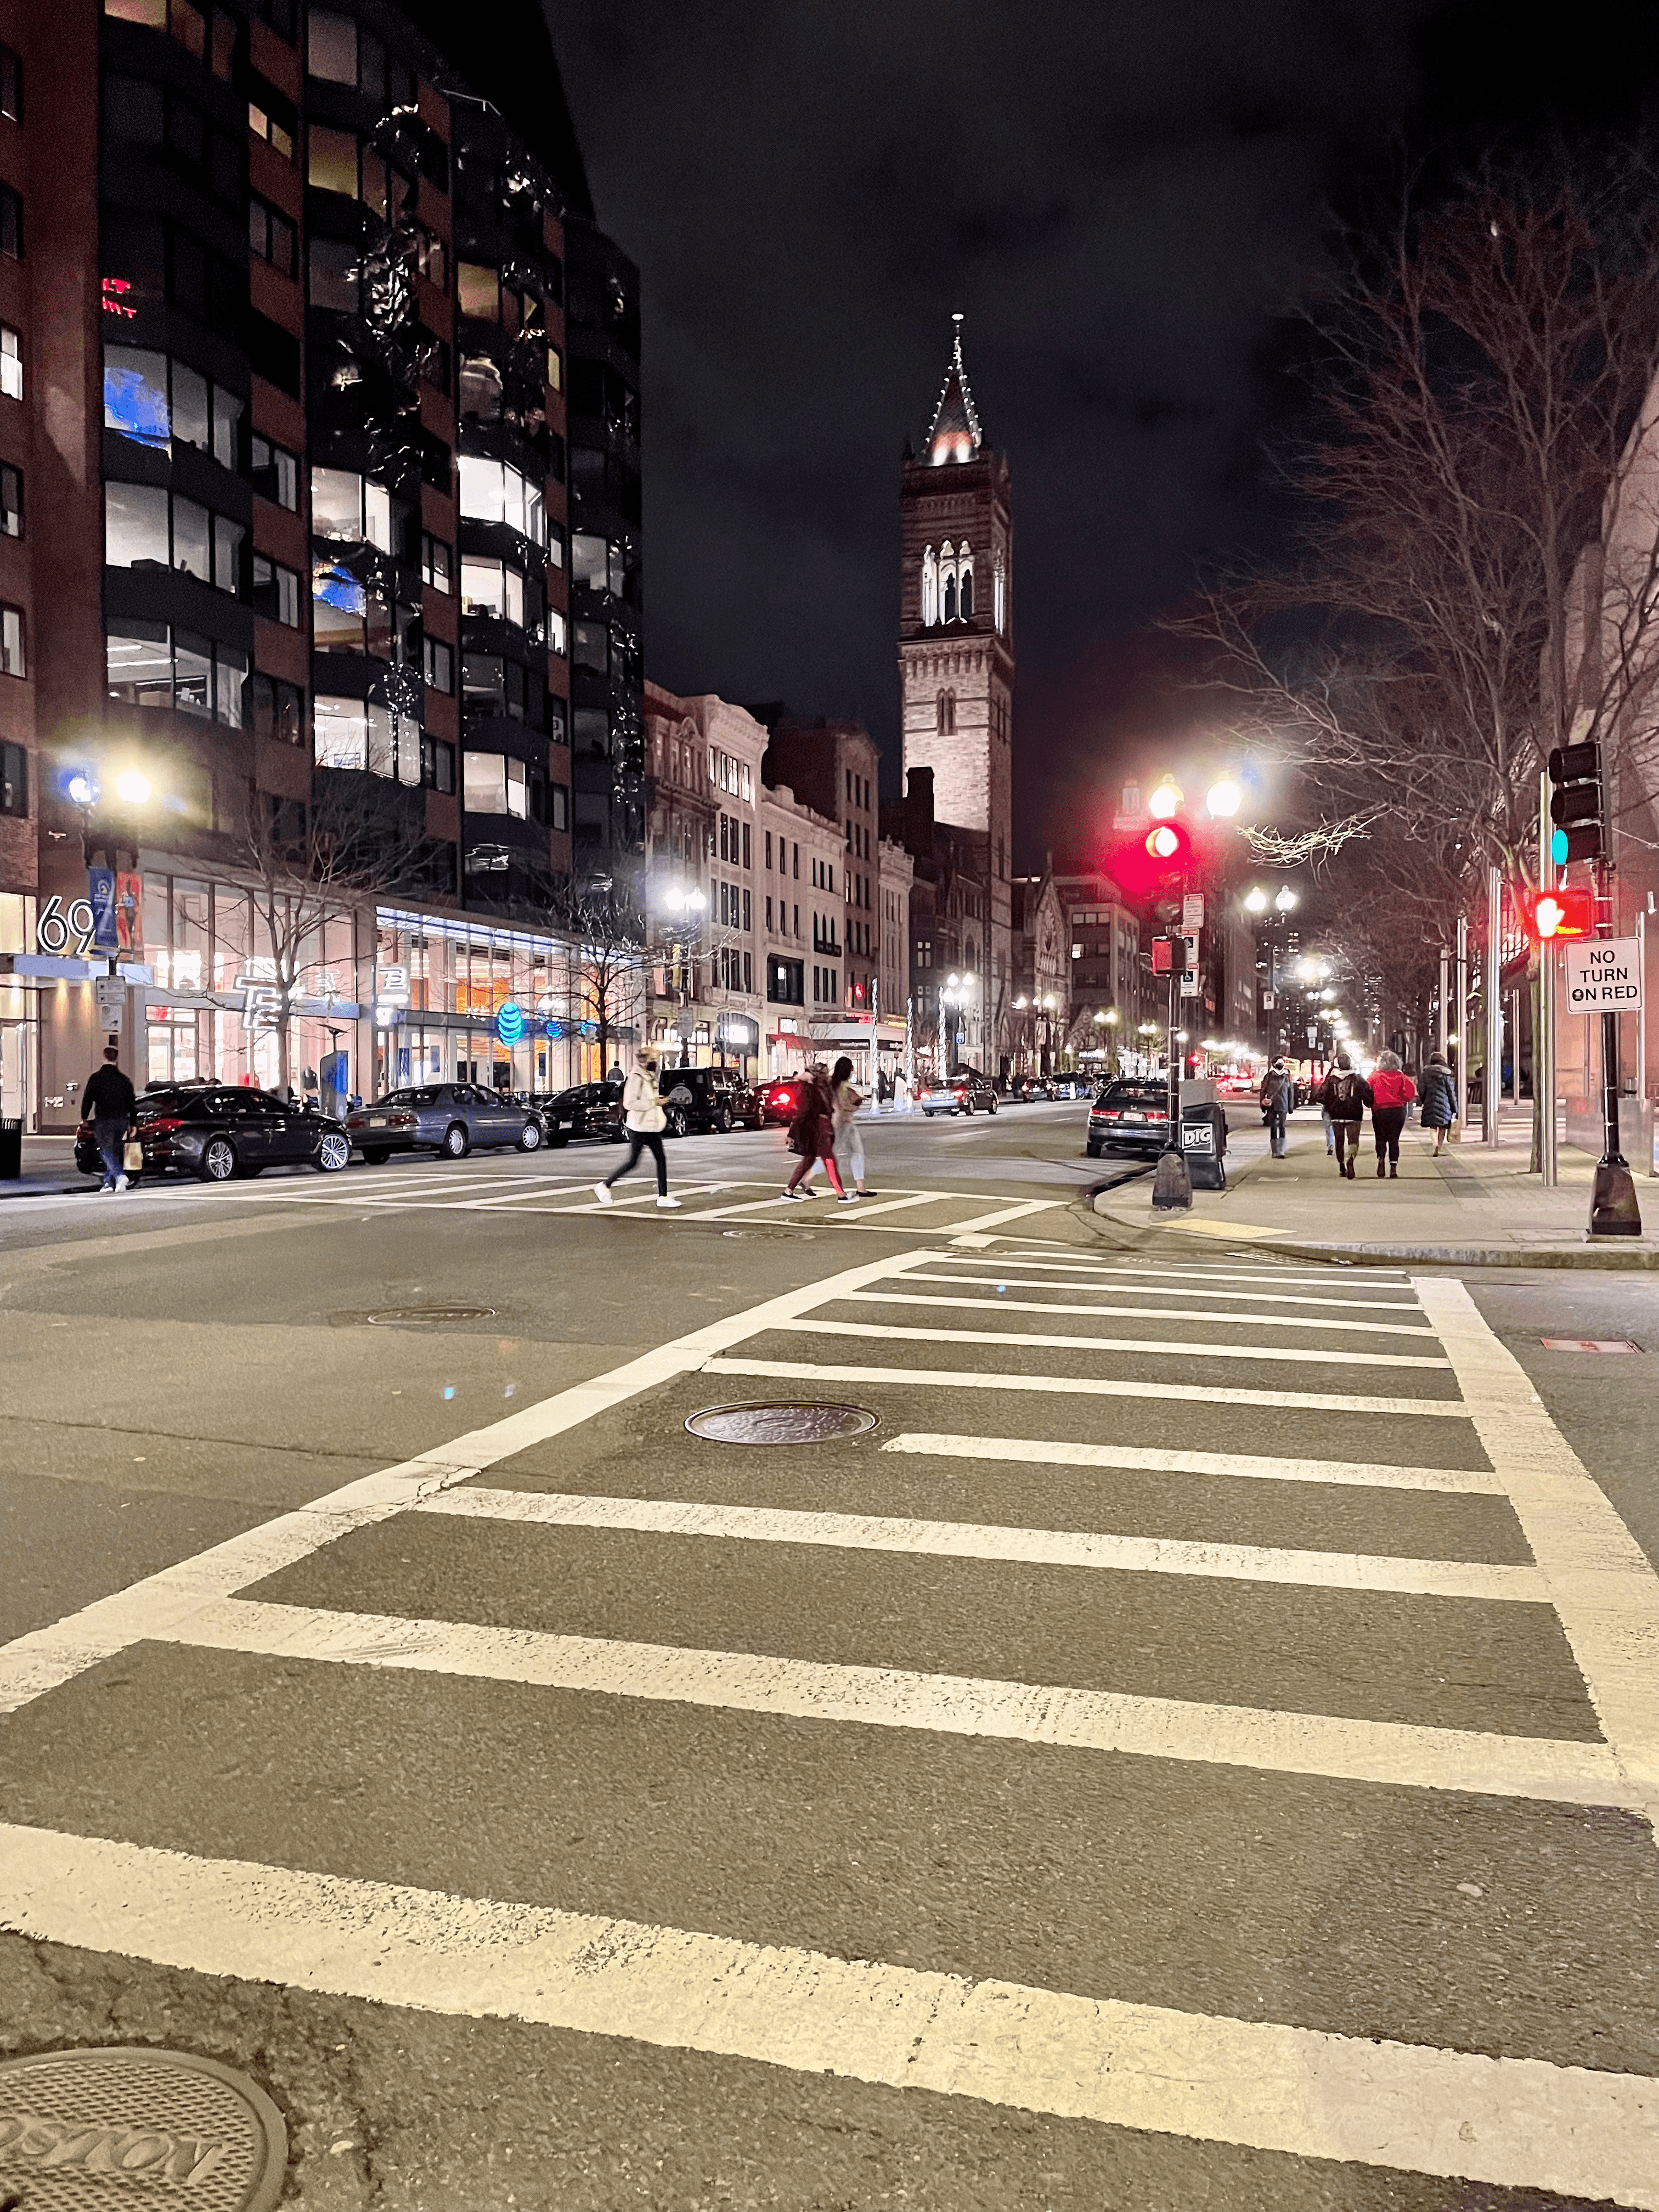 A street in Boston